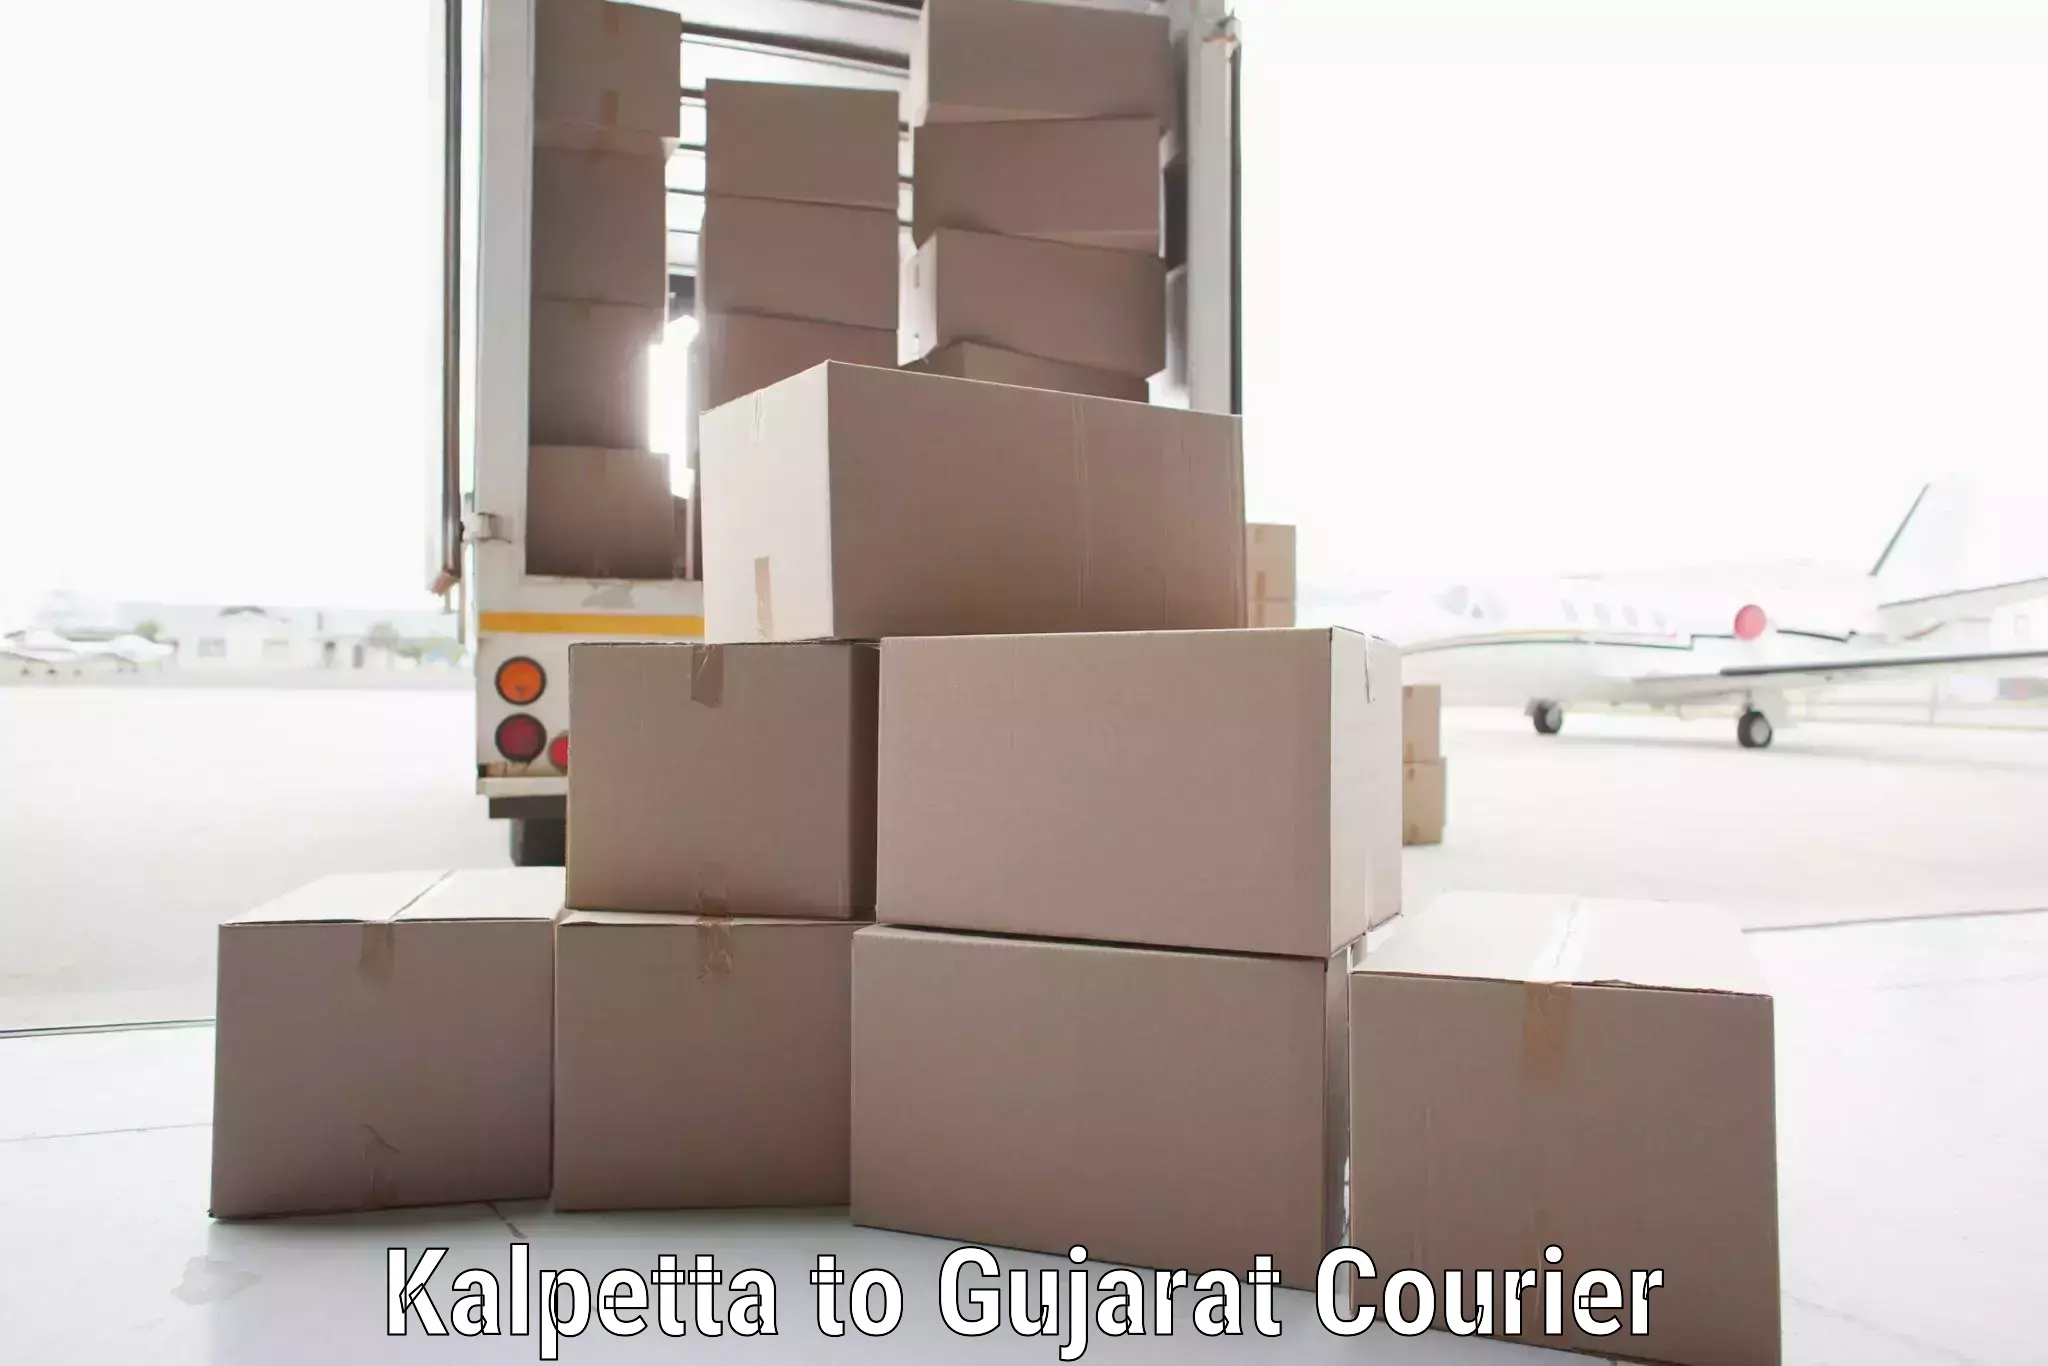 Urgent courier needs Kalpetta to Kadi